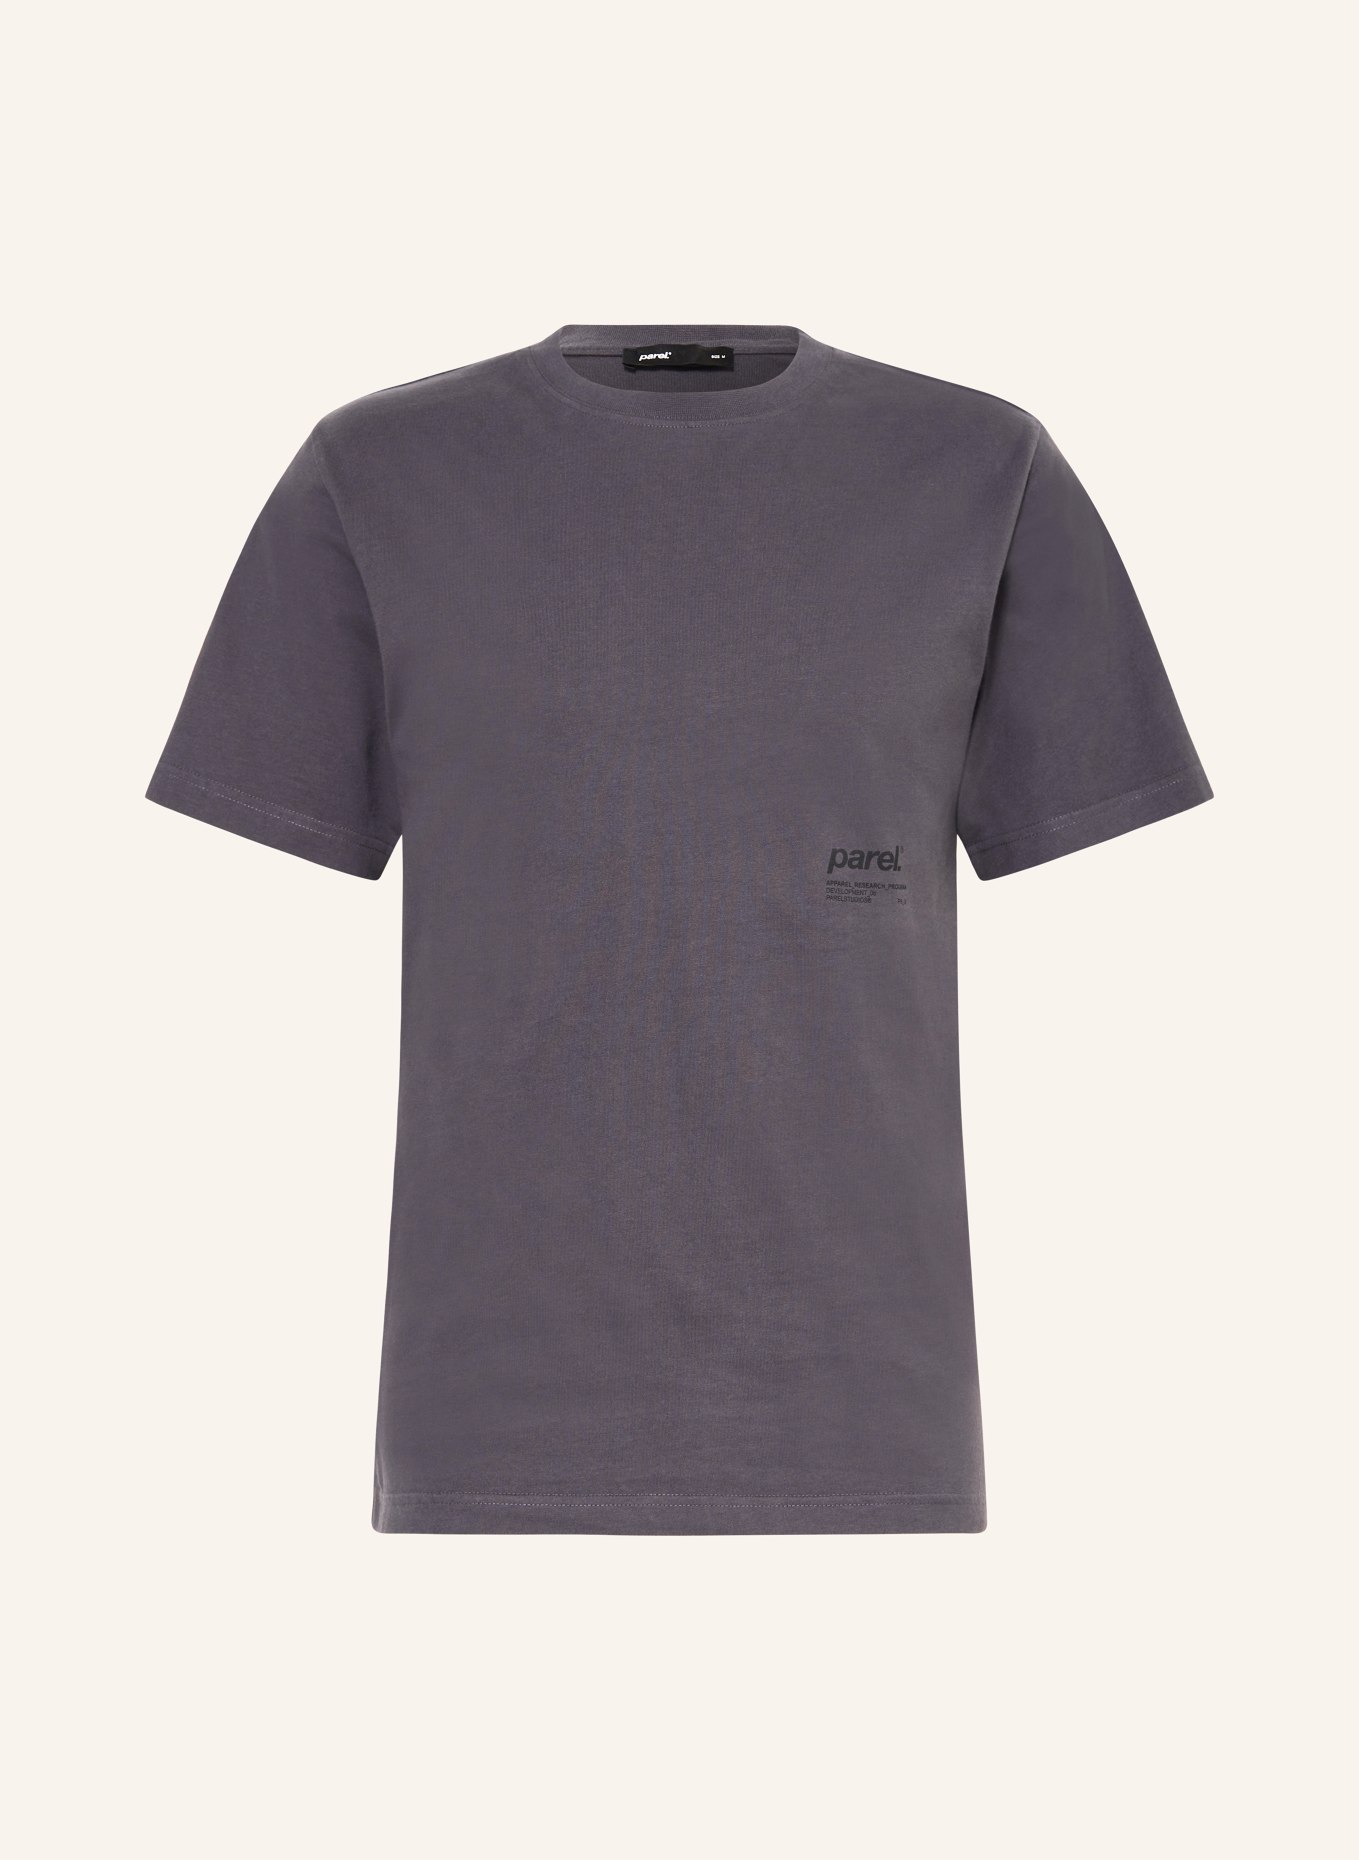 parel. T-shirt, Color: GRAY (Image 1)